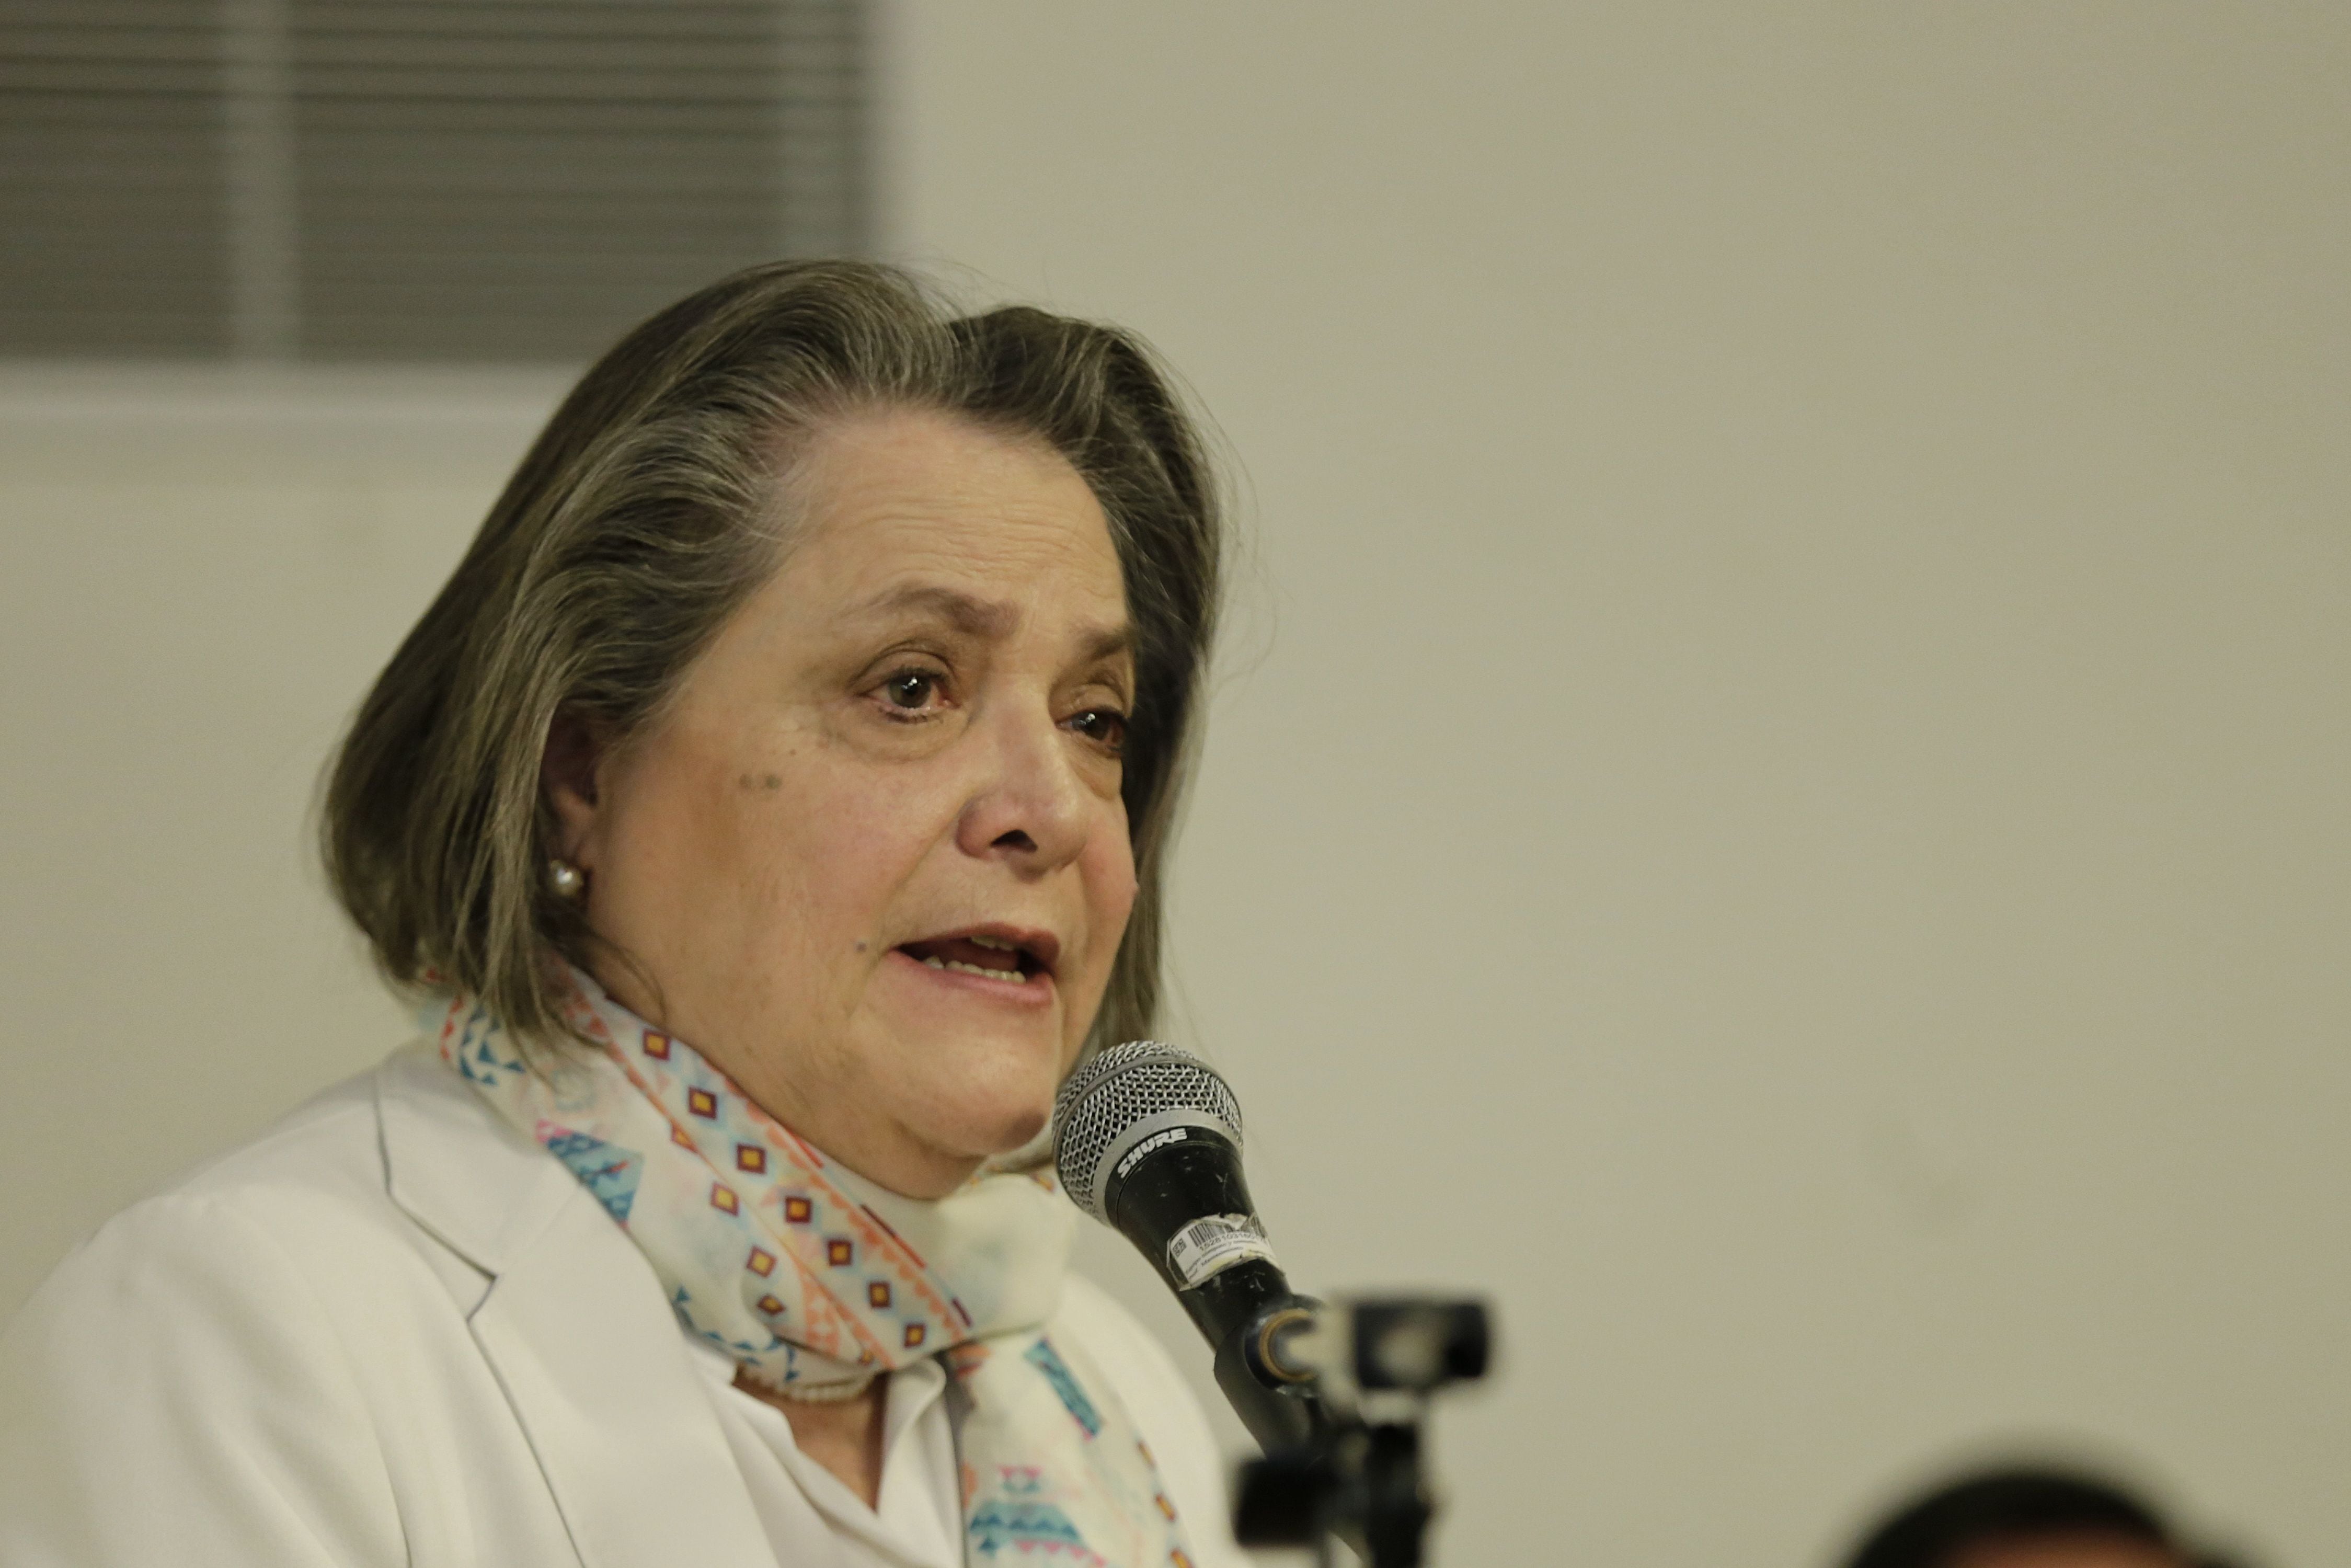 “Algo inaceptable e incorrecto”: Clara López rechazó asedio al Palacio de Justicia